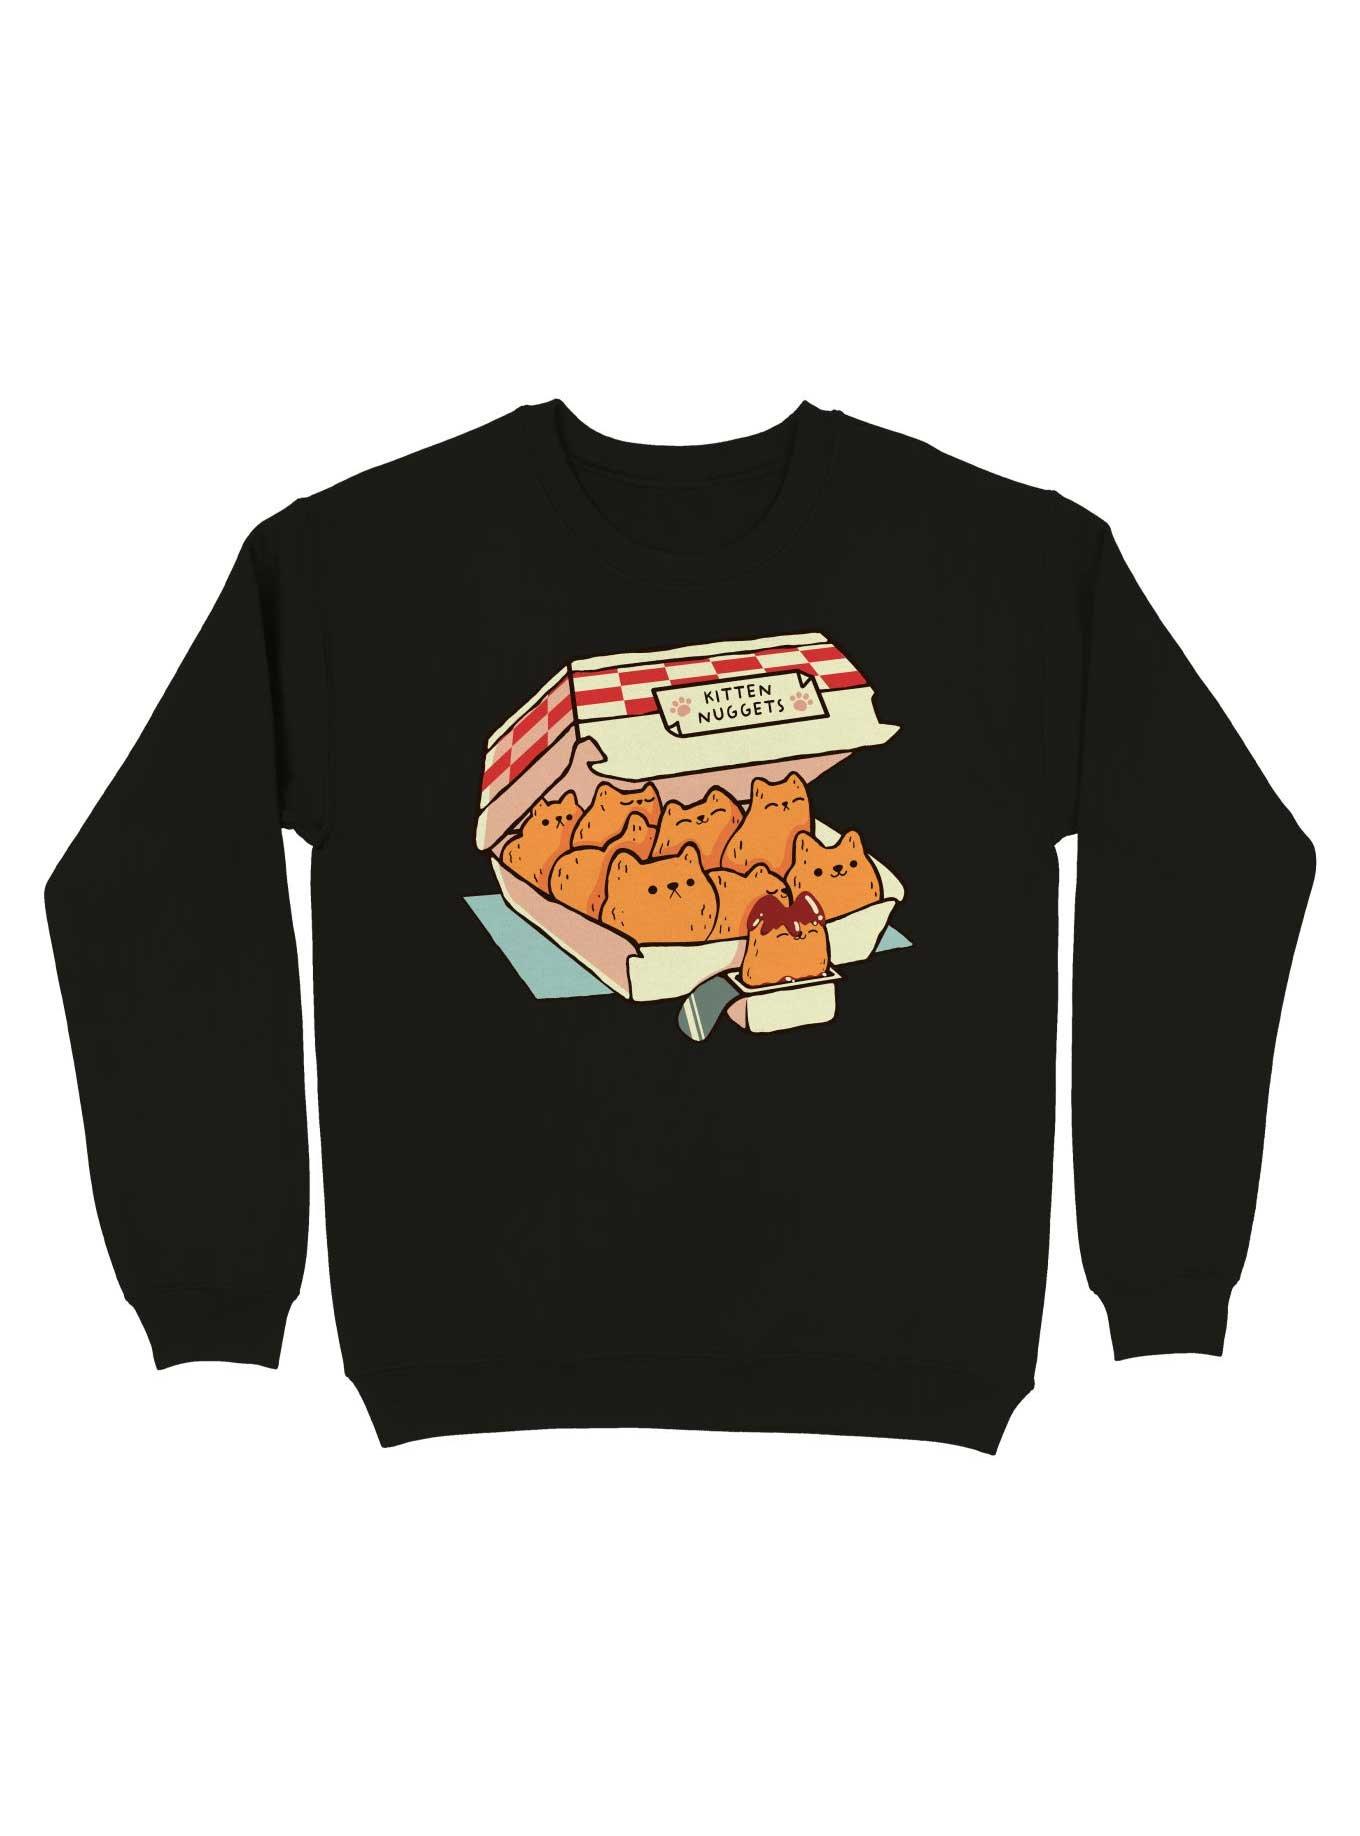 Kitten Nuggets Fast Food Sweatshirt